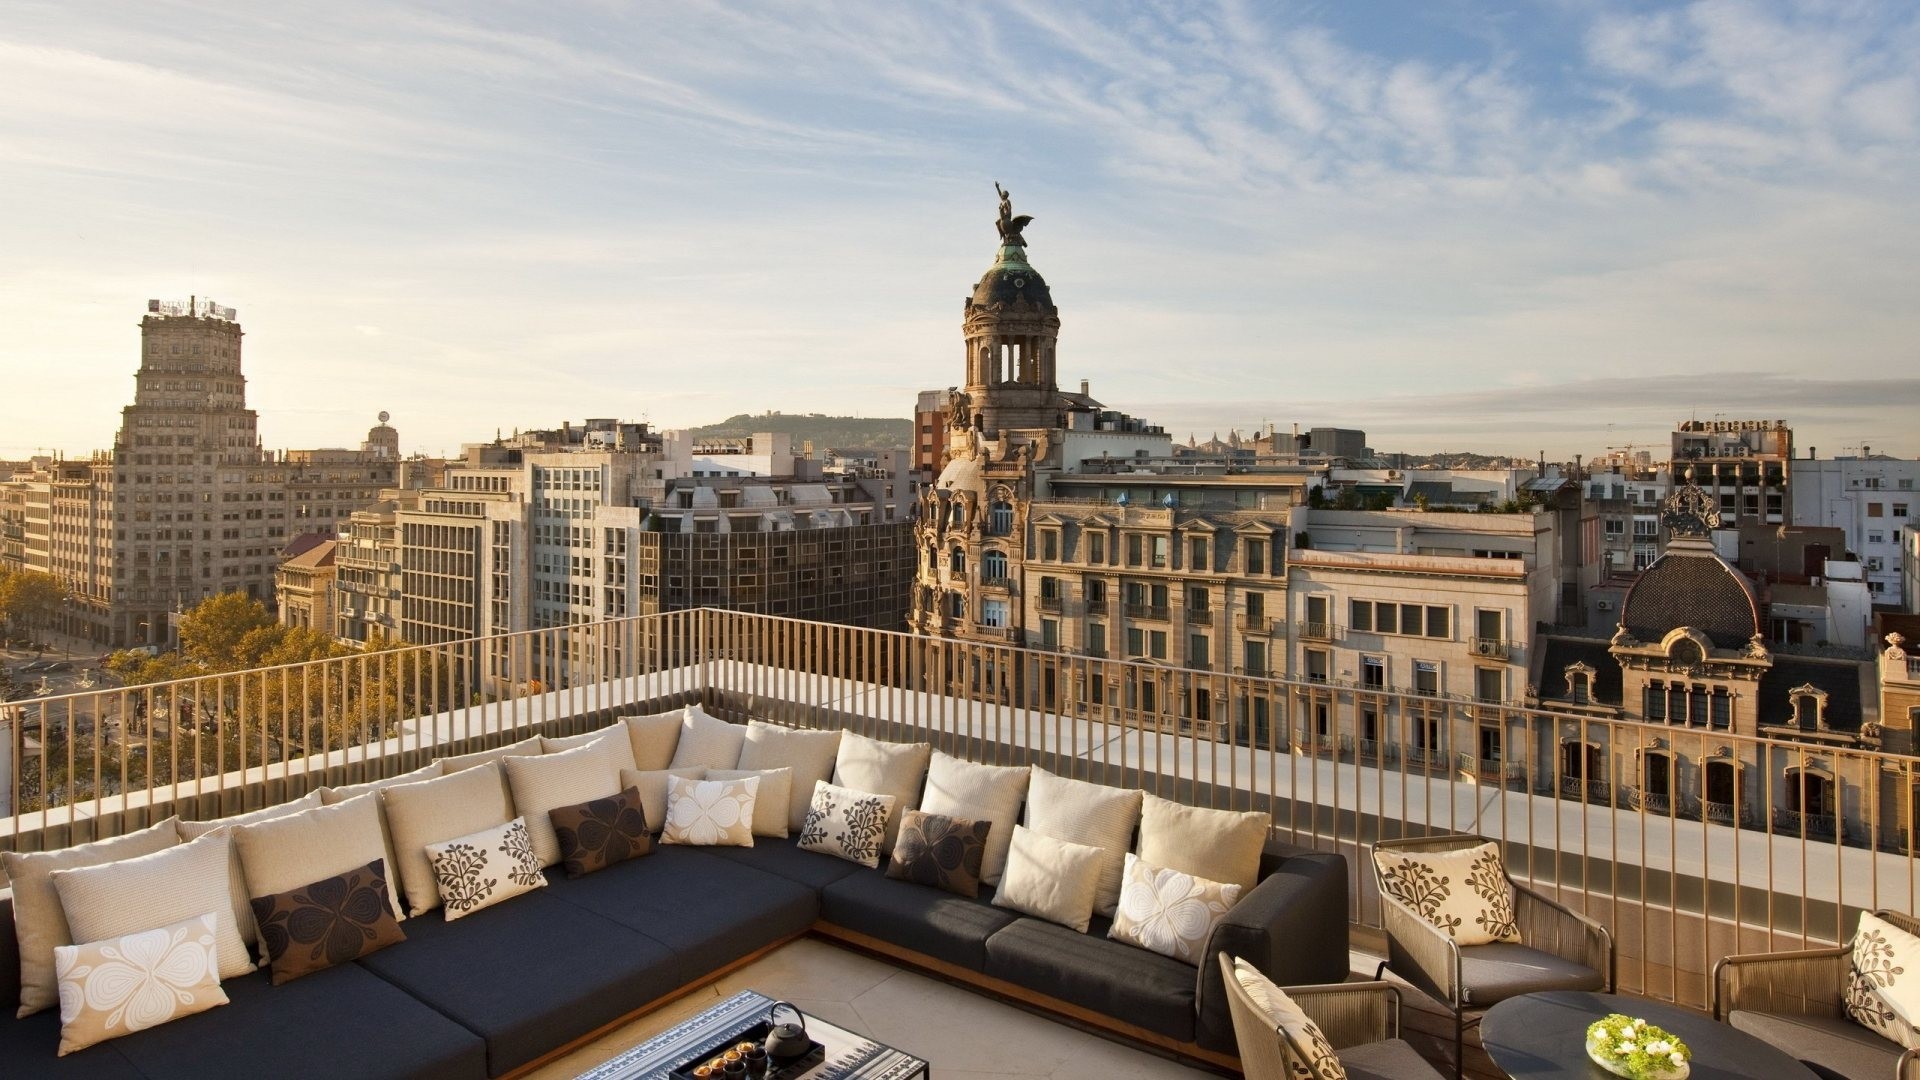 1920x1080 Rooftop Terrace Barcelona Roof City View Free Desktop Wallpaper - 